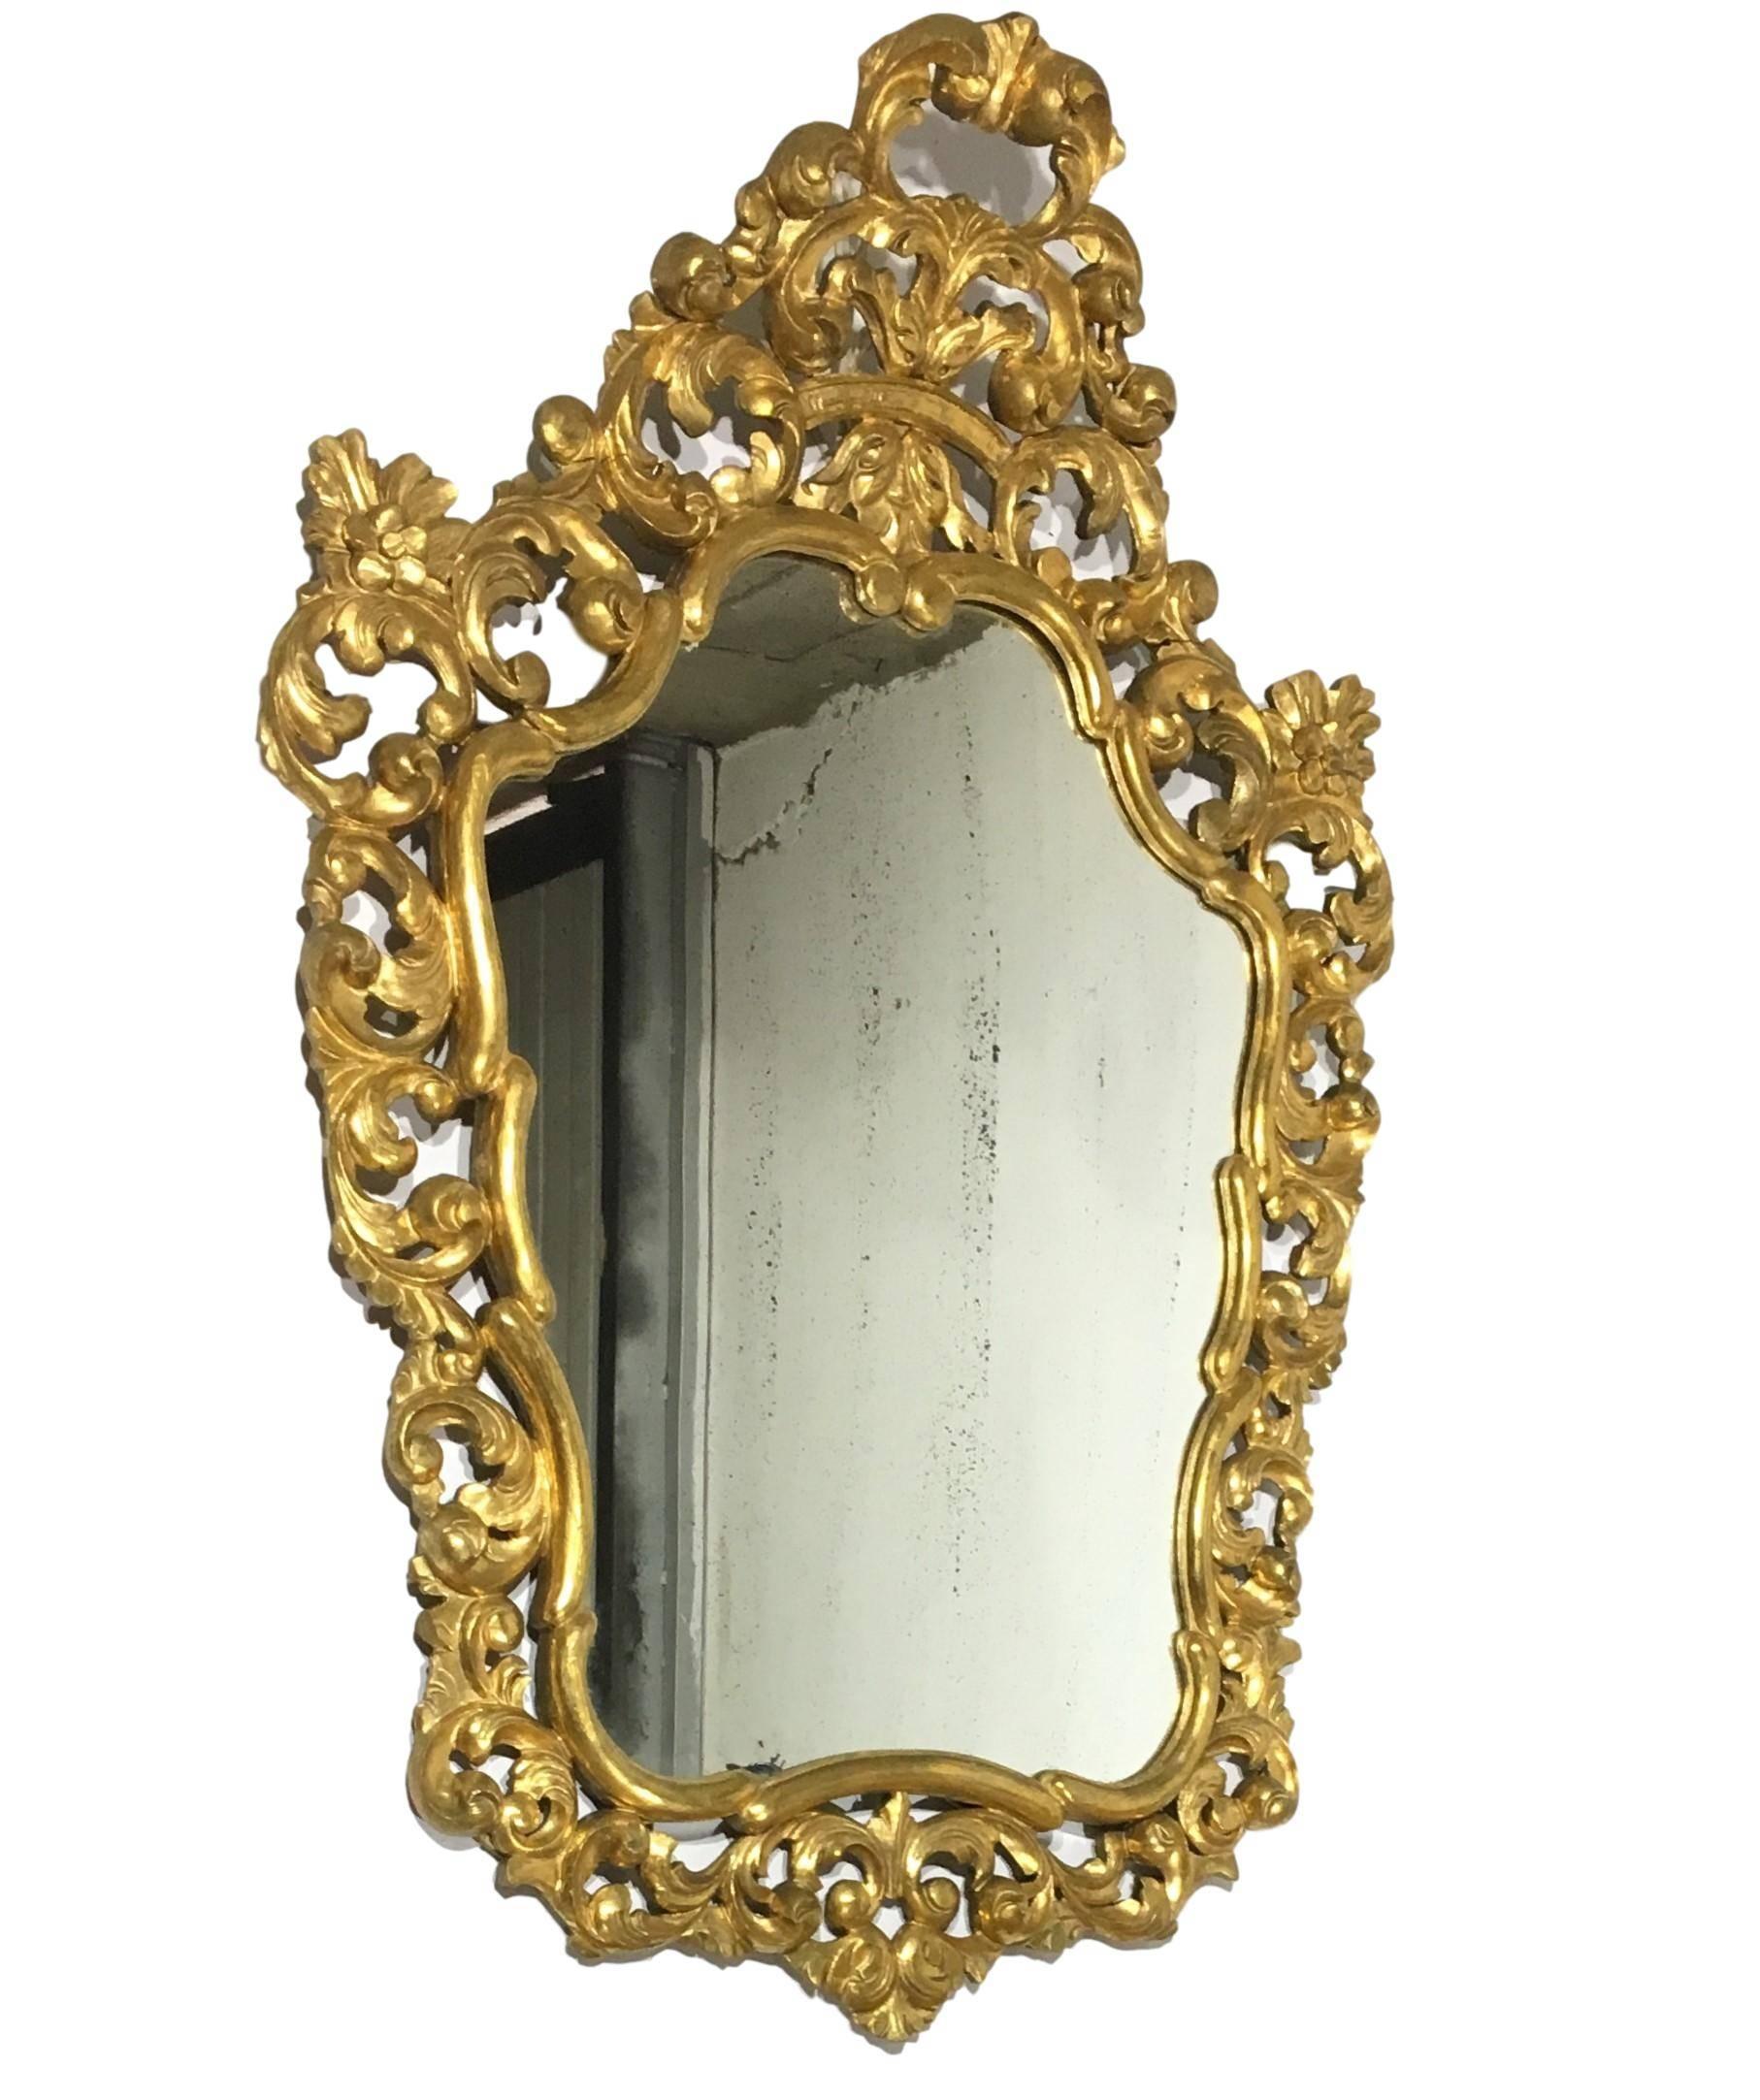 miroir rectangulaire en bois doré sculpté d'époque Empire 19e français
Une paire exceptionnelle de miroirs italiens sculptés et dorés à la main. Hautement sculpté avec des fleurs, verre original (peut-être ré-argenté) et dos en bois original.